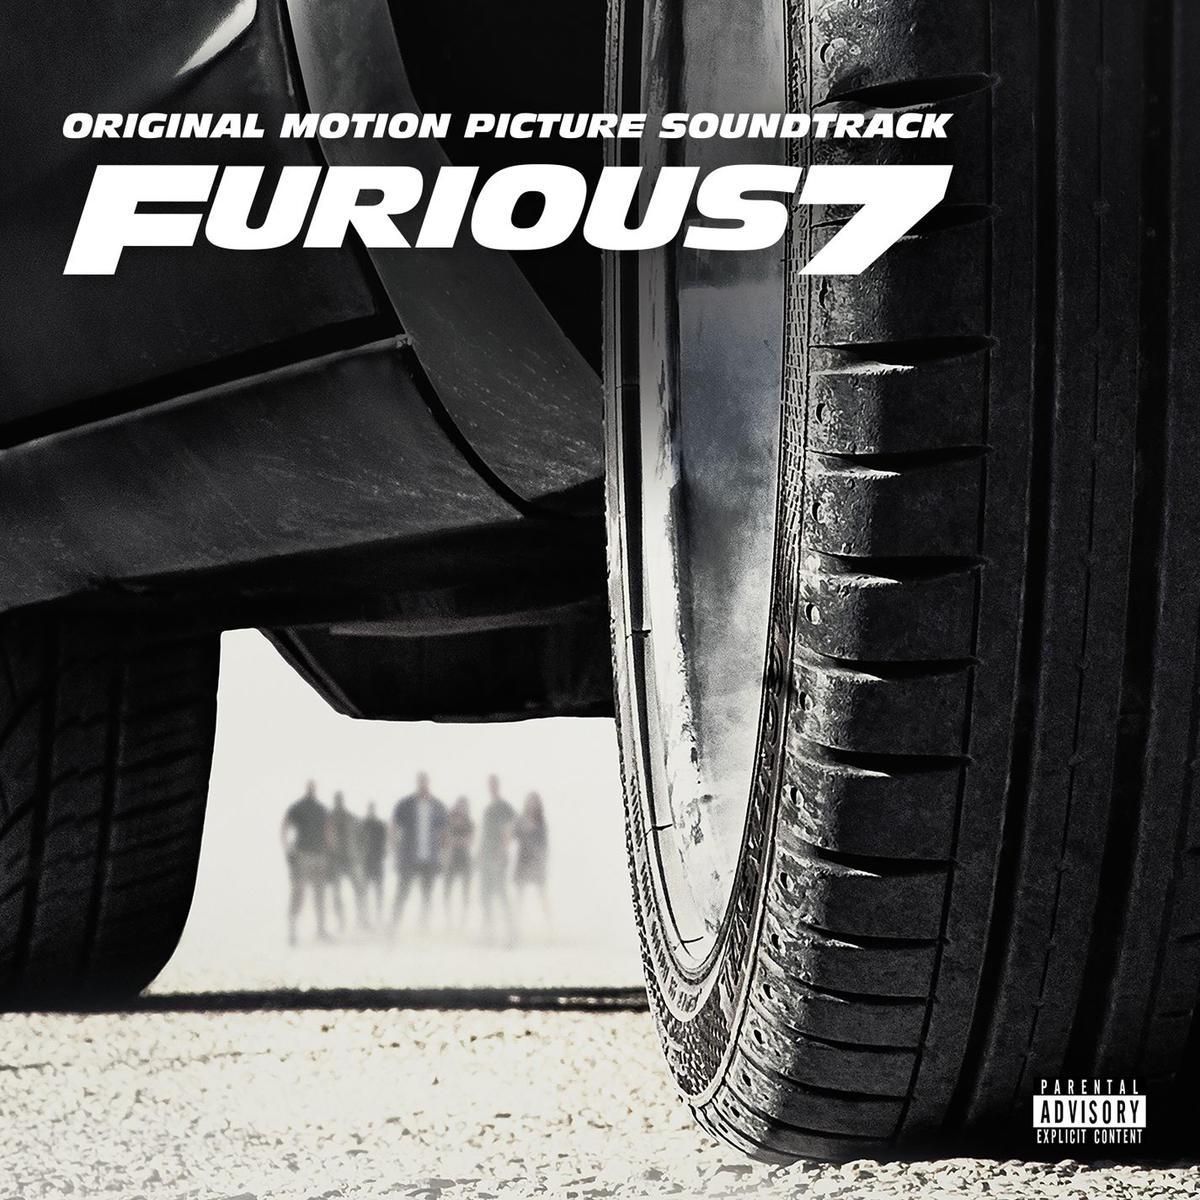 Форсаж 7 музыка из фильма Furious 7 Original Motion Picture Soundtrack